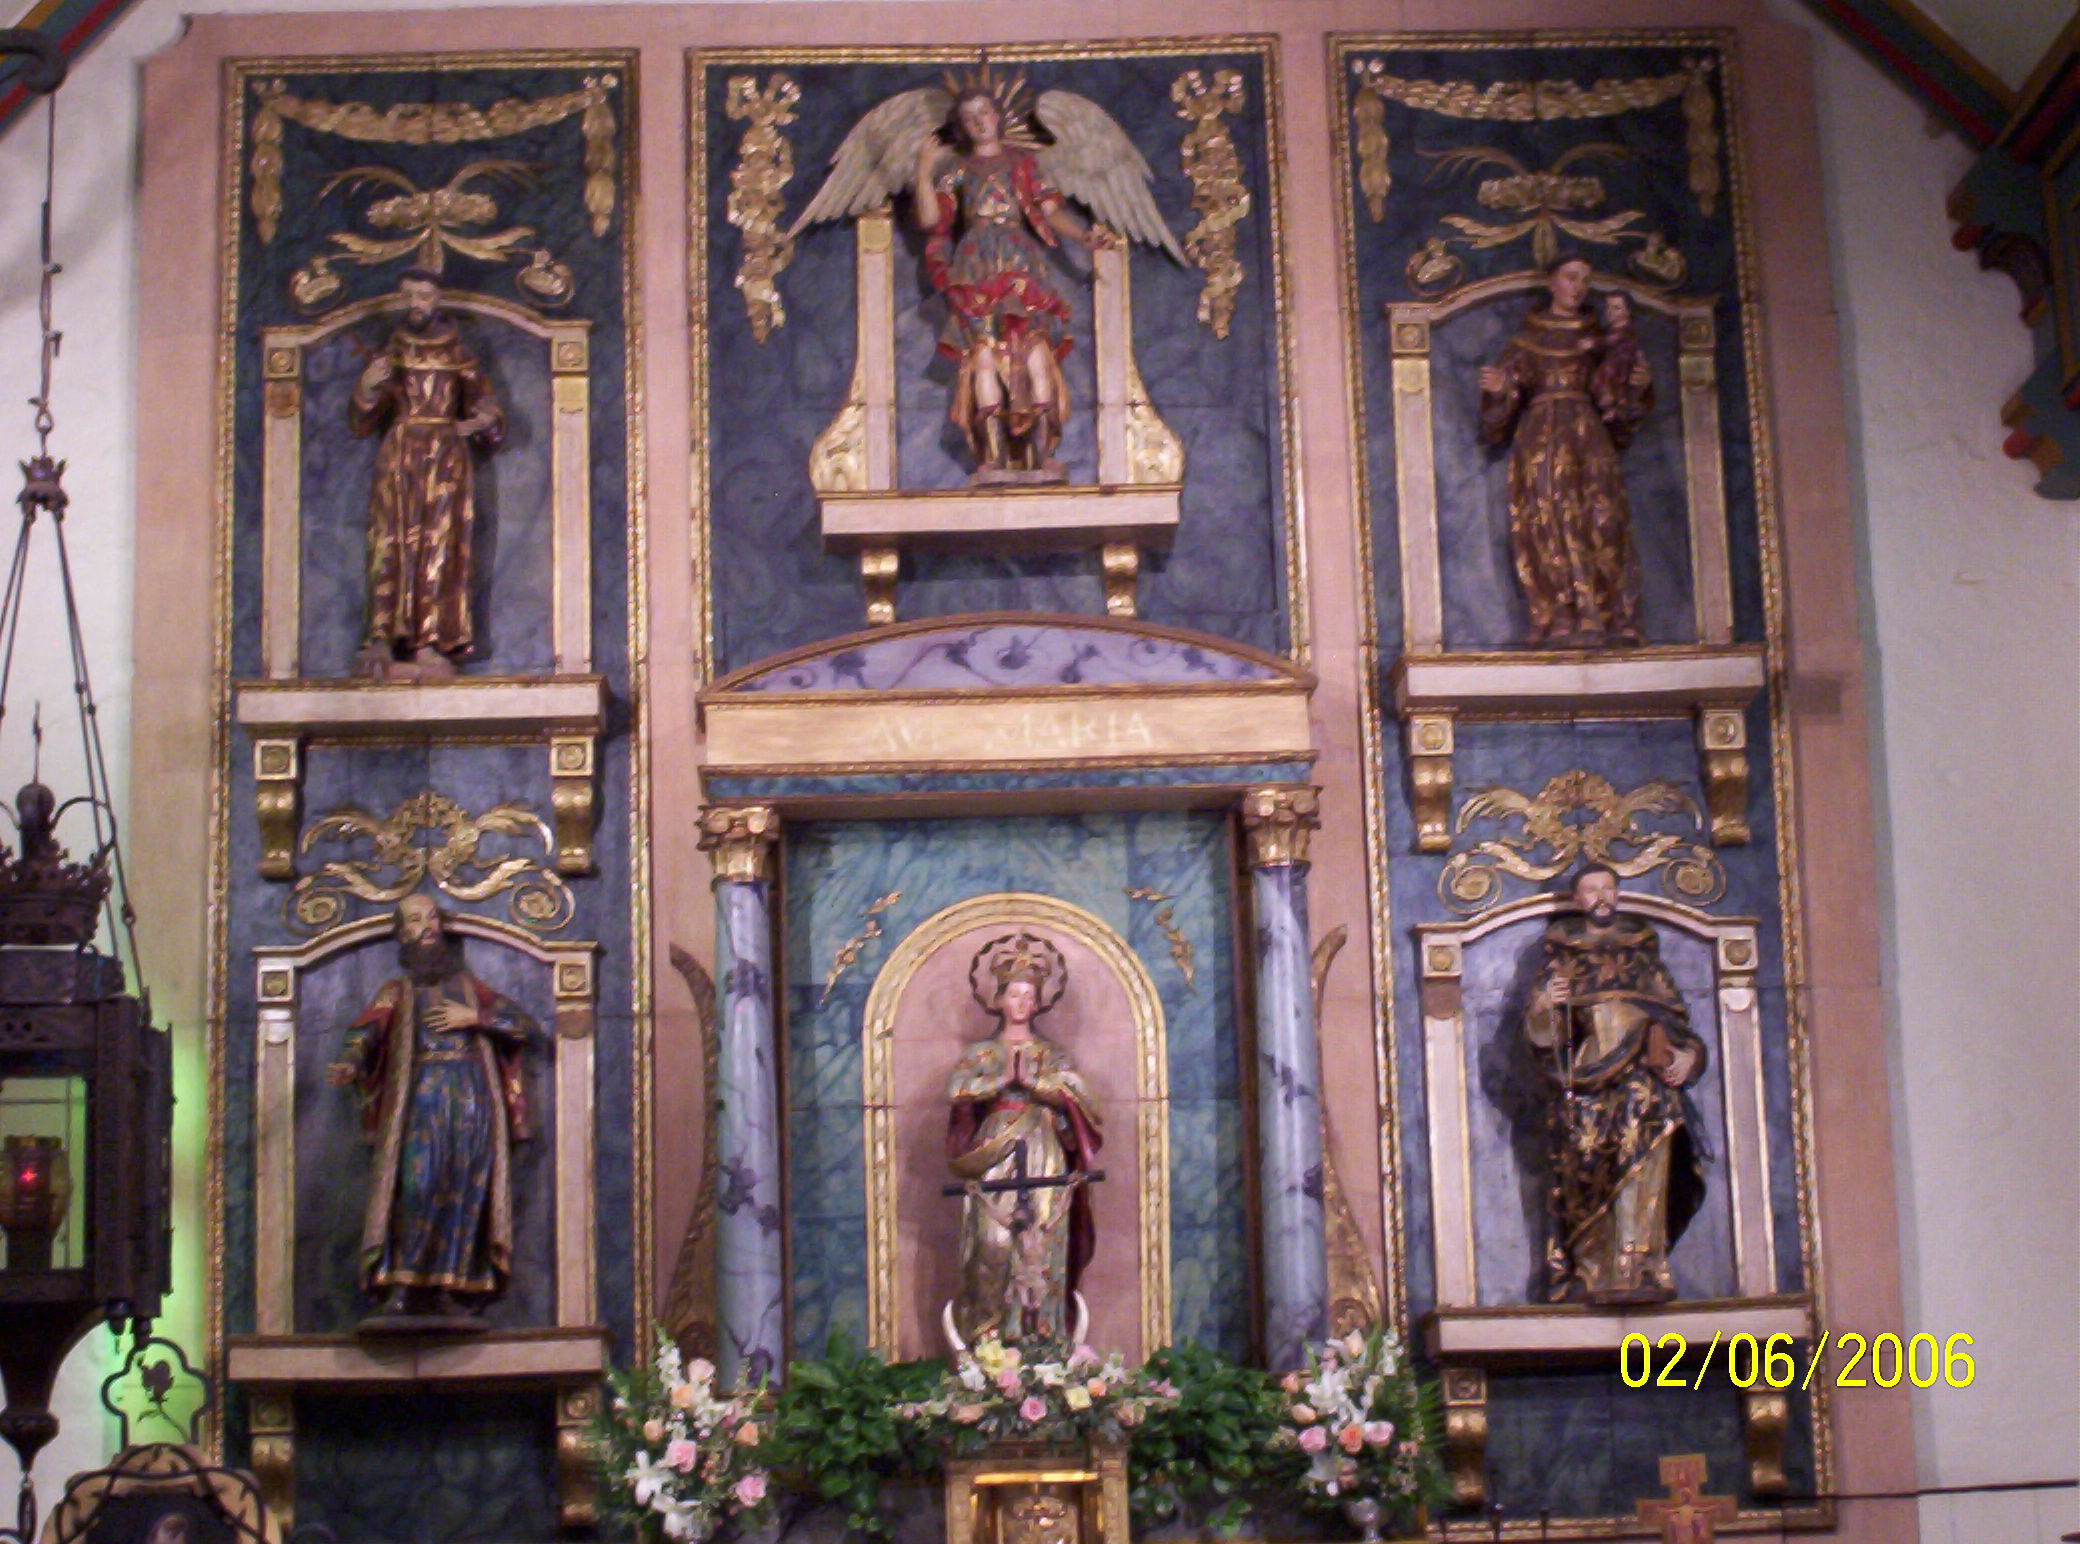 retablo, altar piece, quiet dark churches